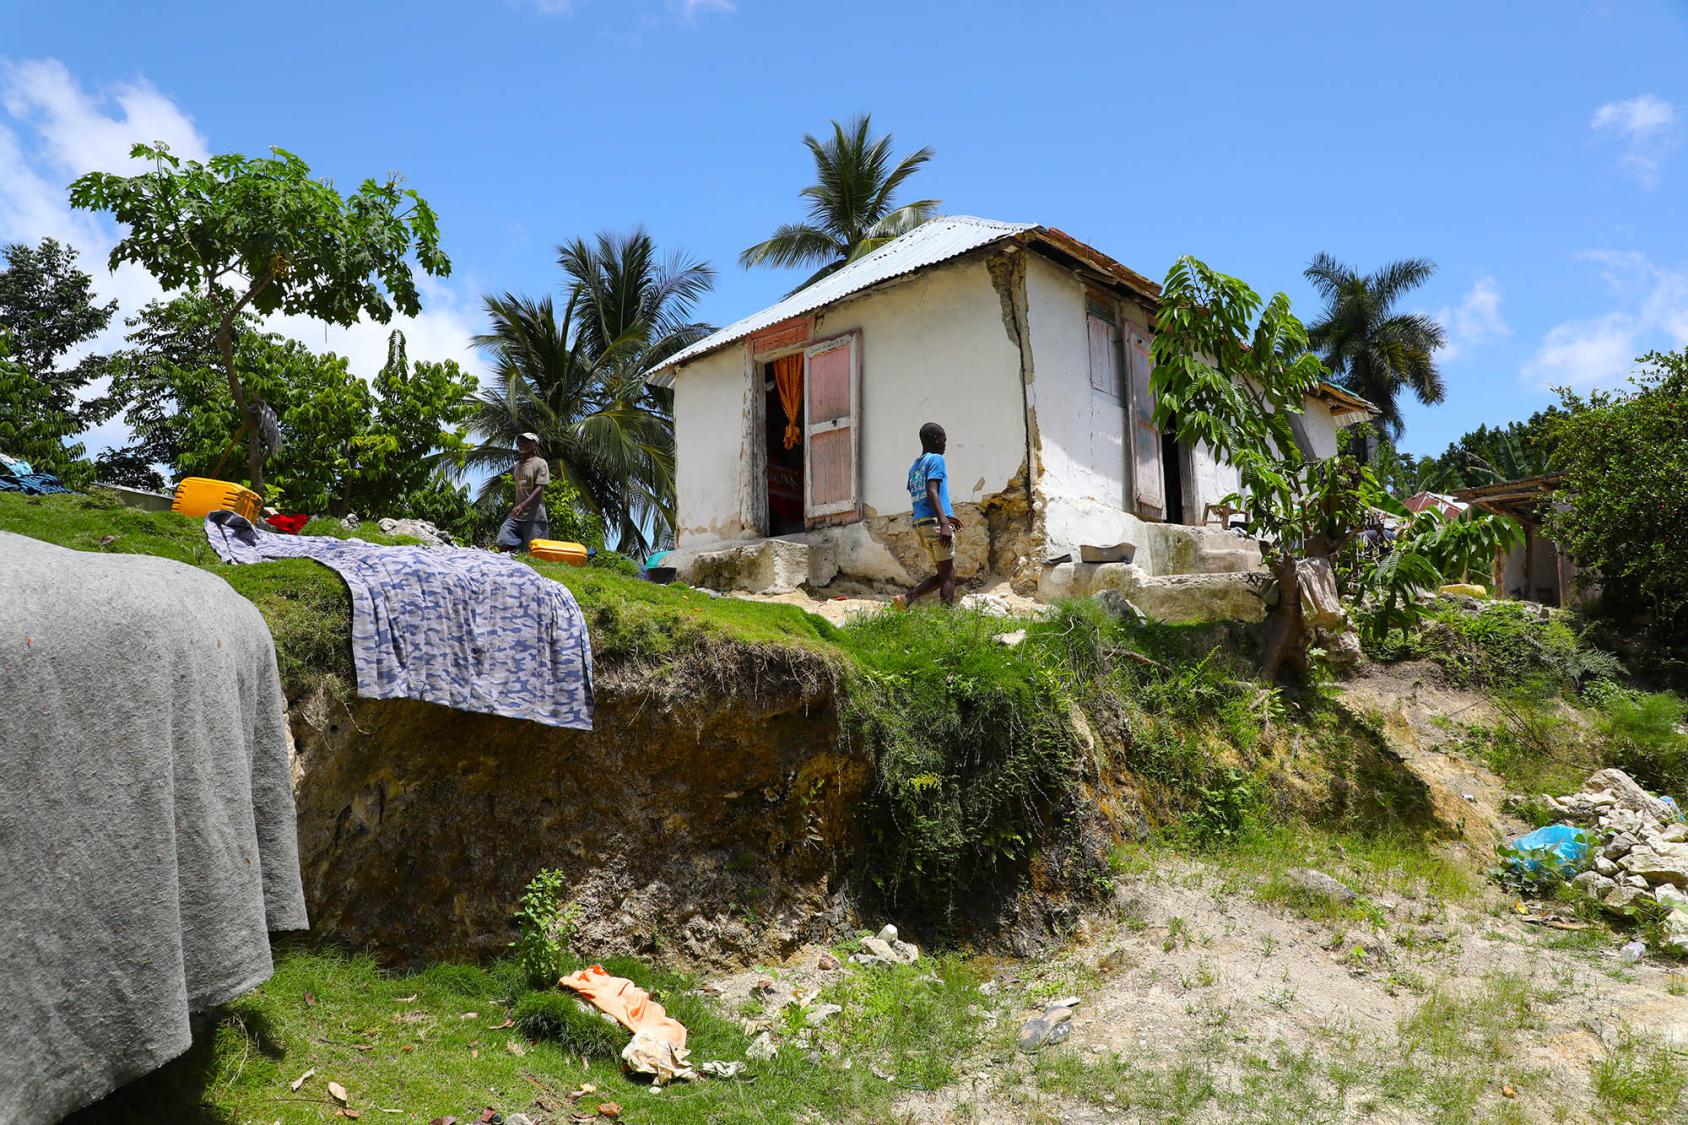 Una persona se encuentra cerca de una casa blanca con varios artículos de lavandería puestos a secar al aire libre en una colina.